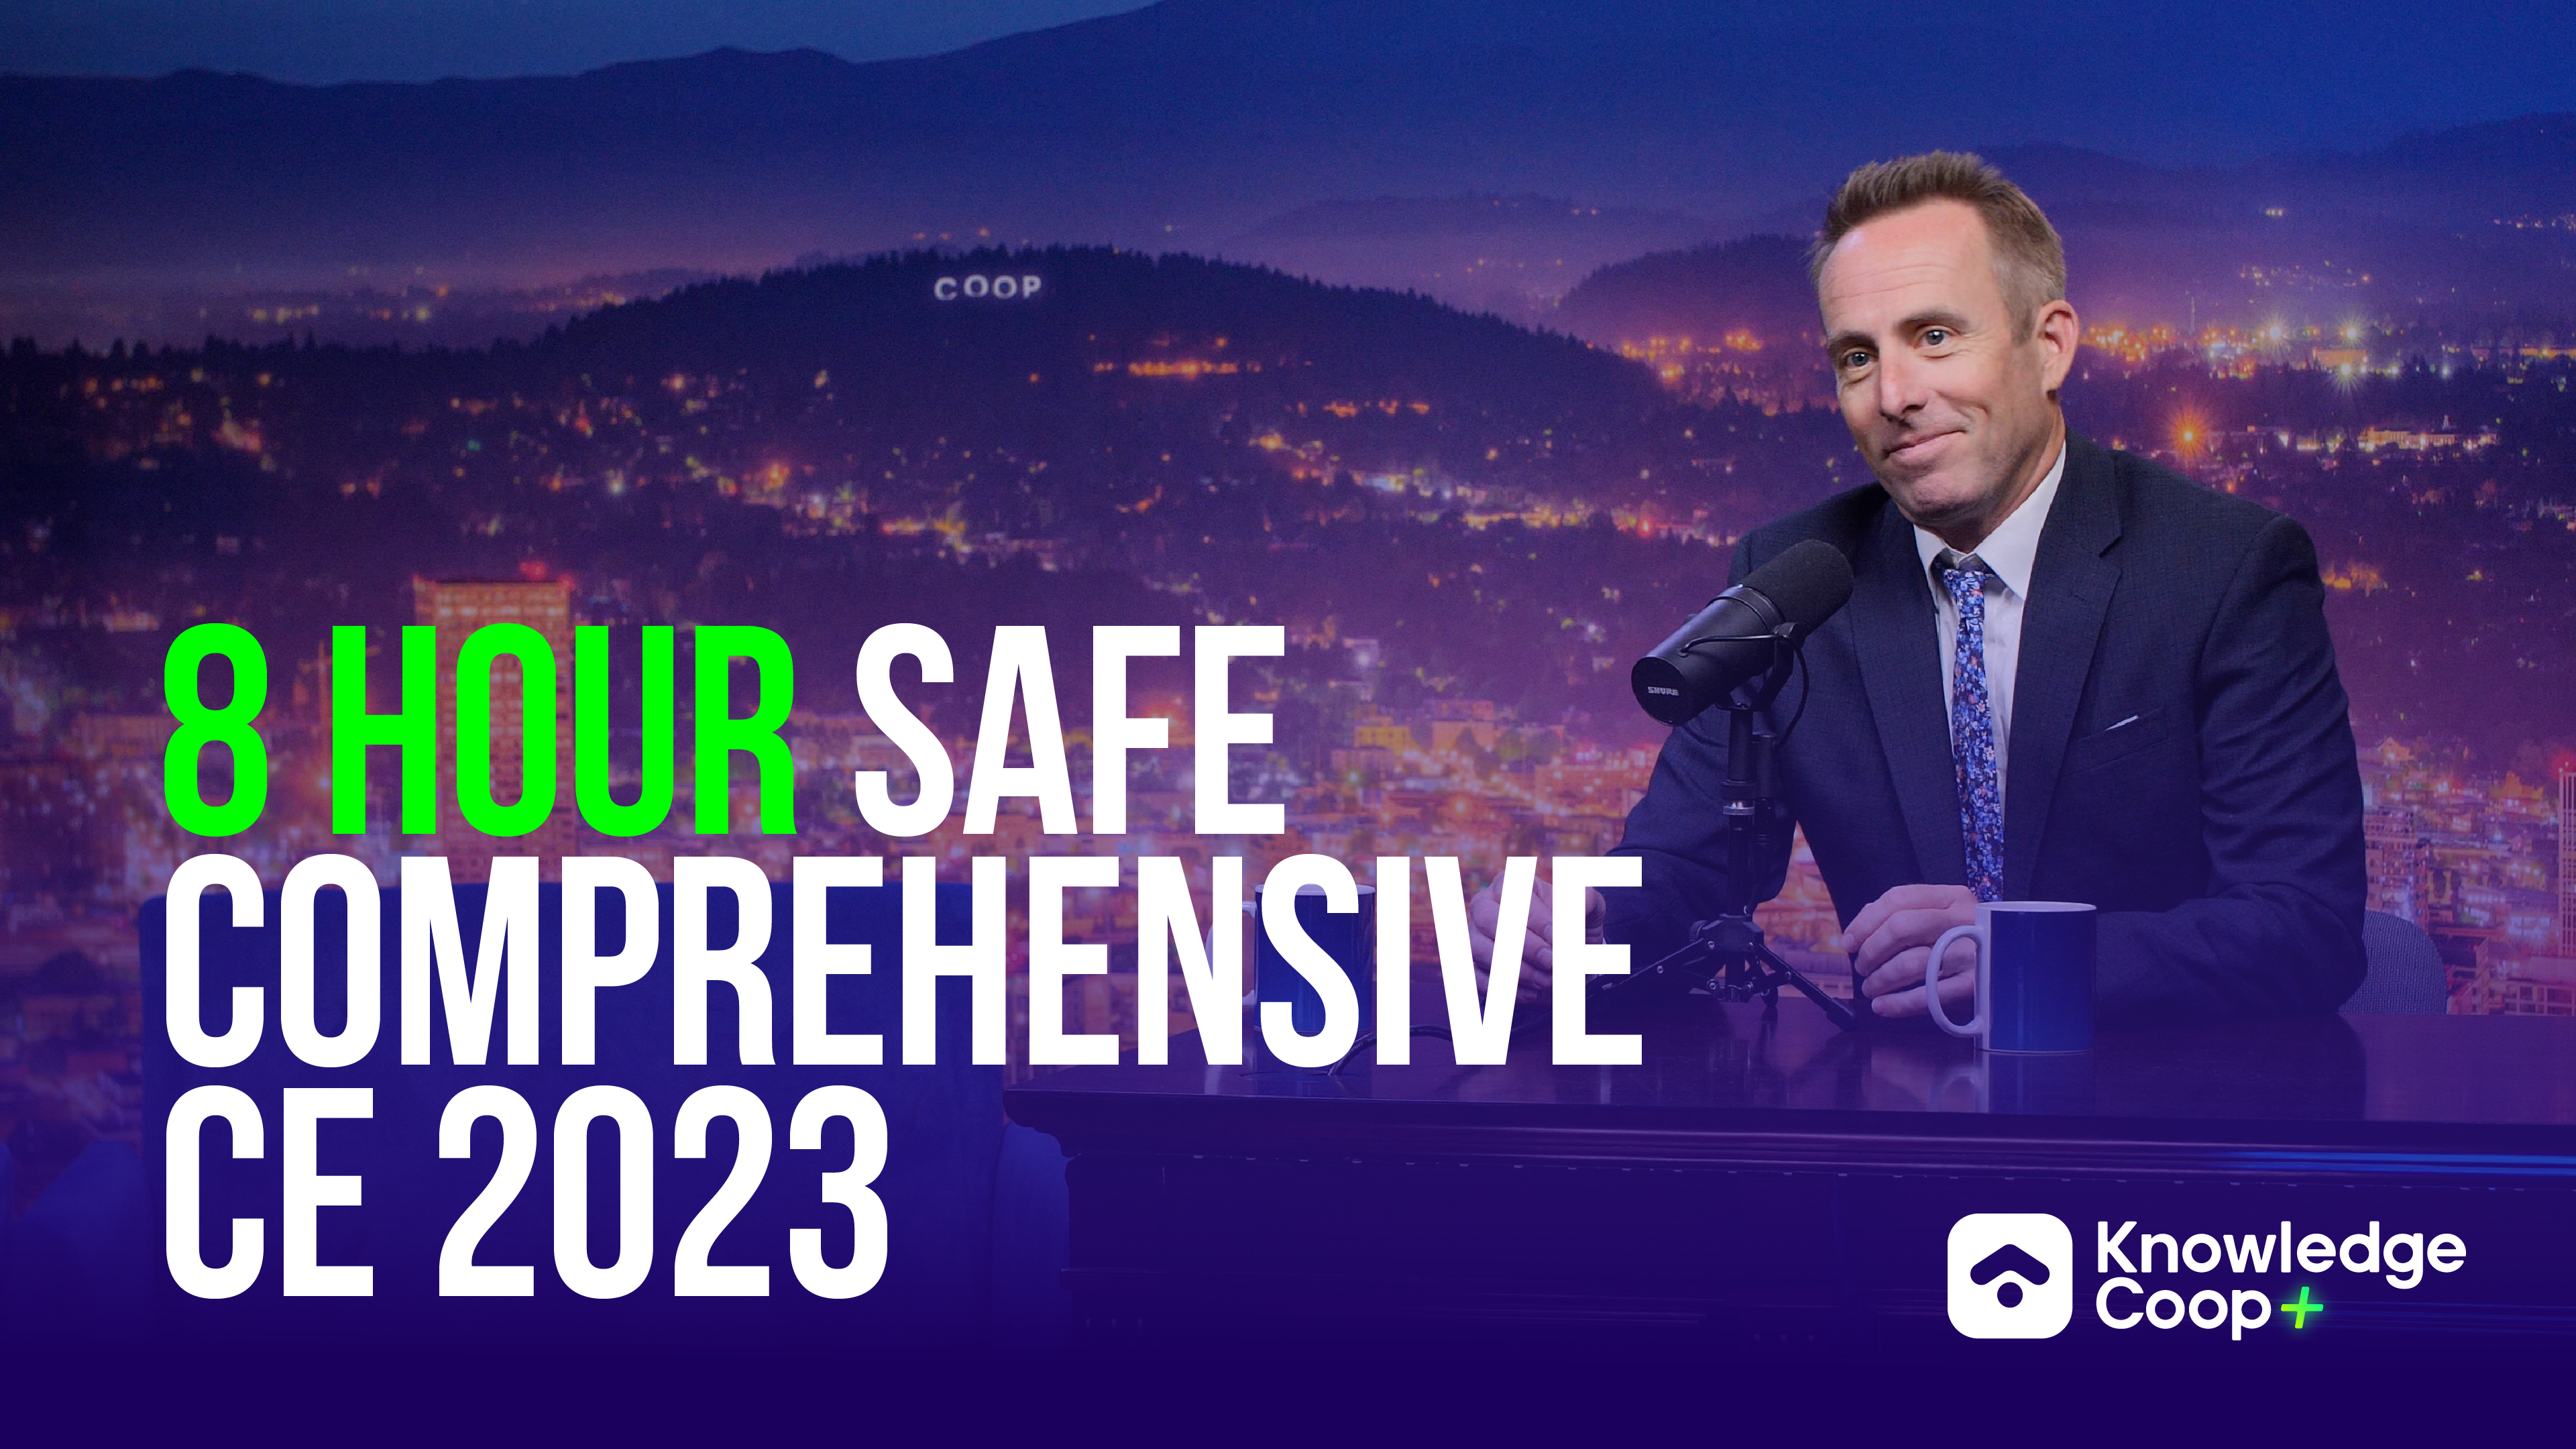 8 Hour SAFE Comprehensive CE 2023: CE Tonight